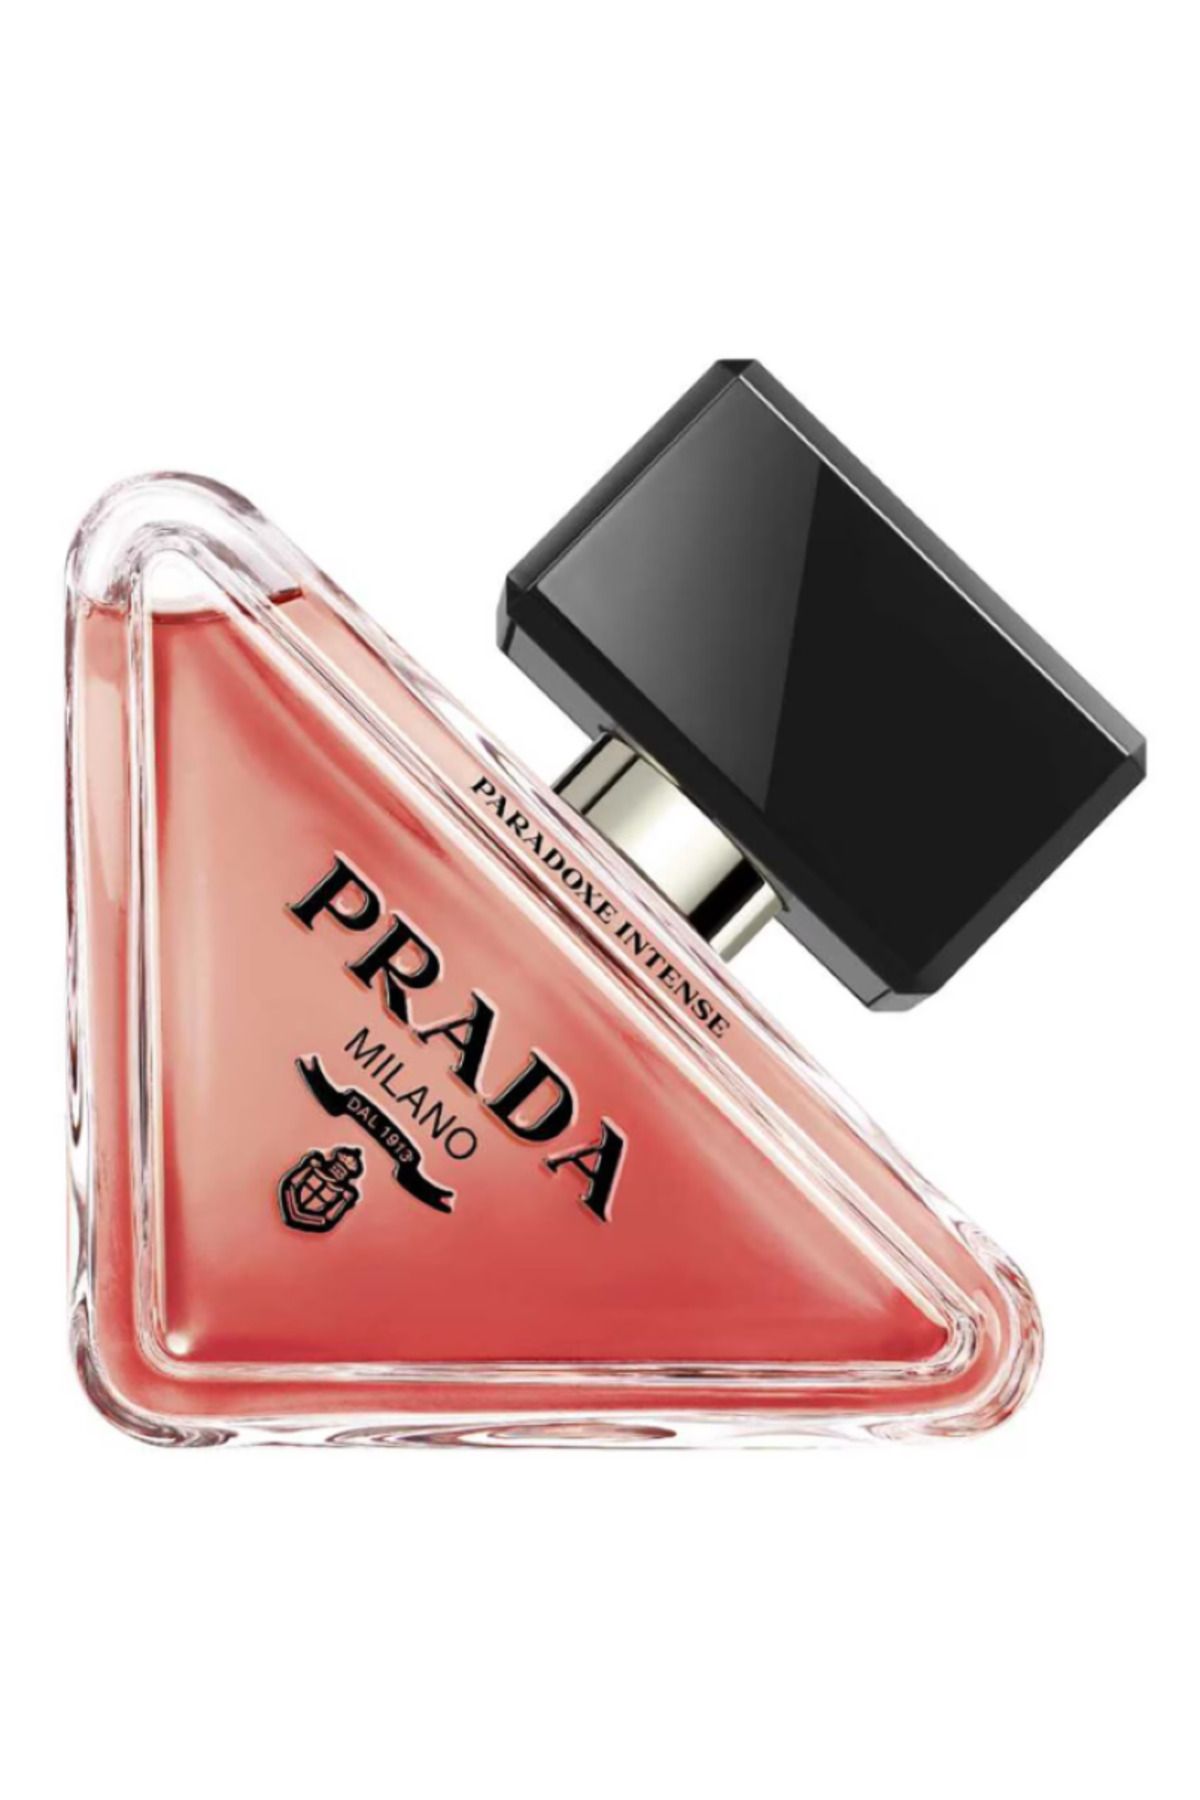 Prada Paradoxe Intense - Eau de Parfum Hem Güçlü Hem De Hassas 90 ml